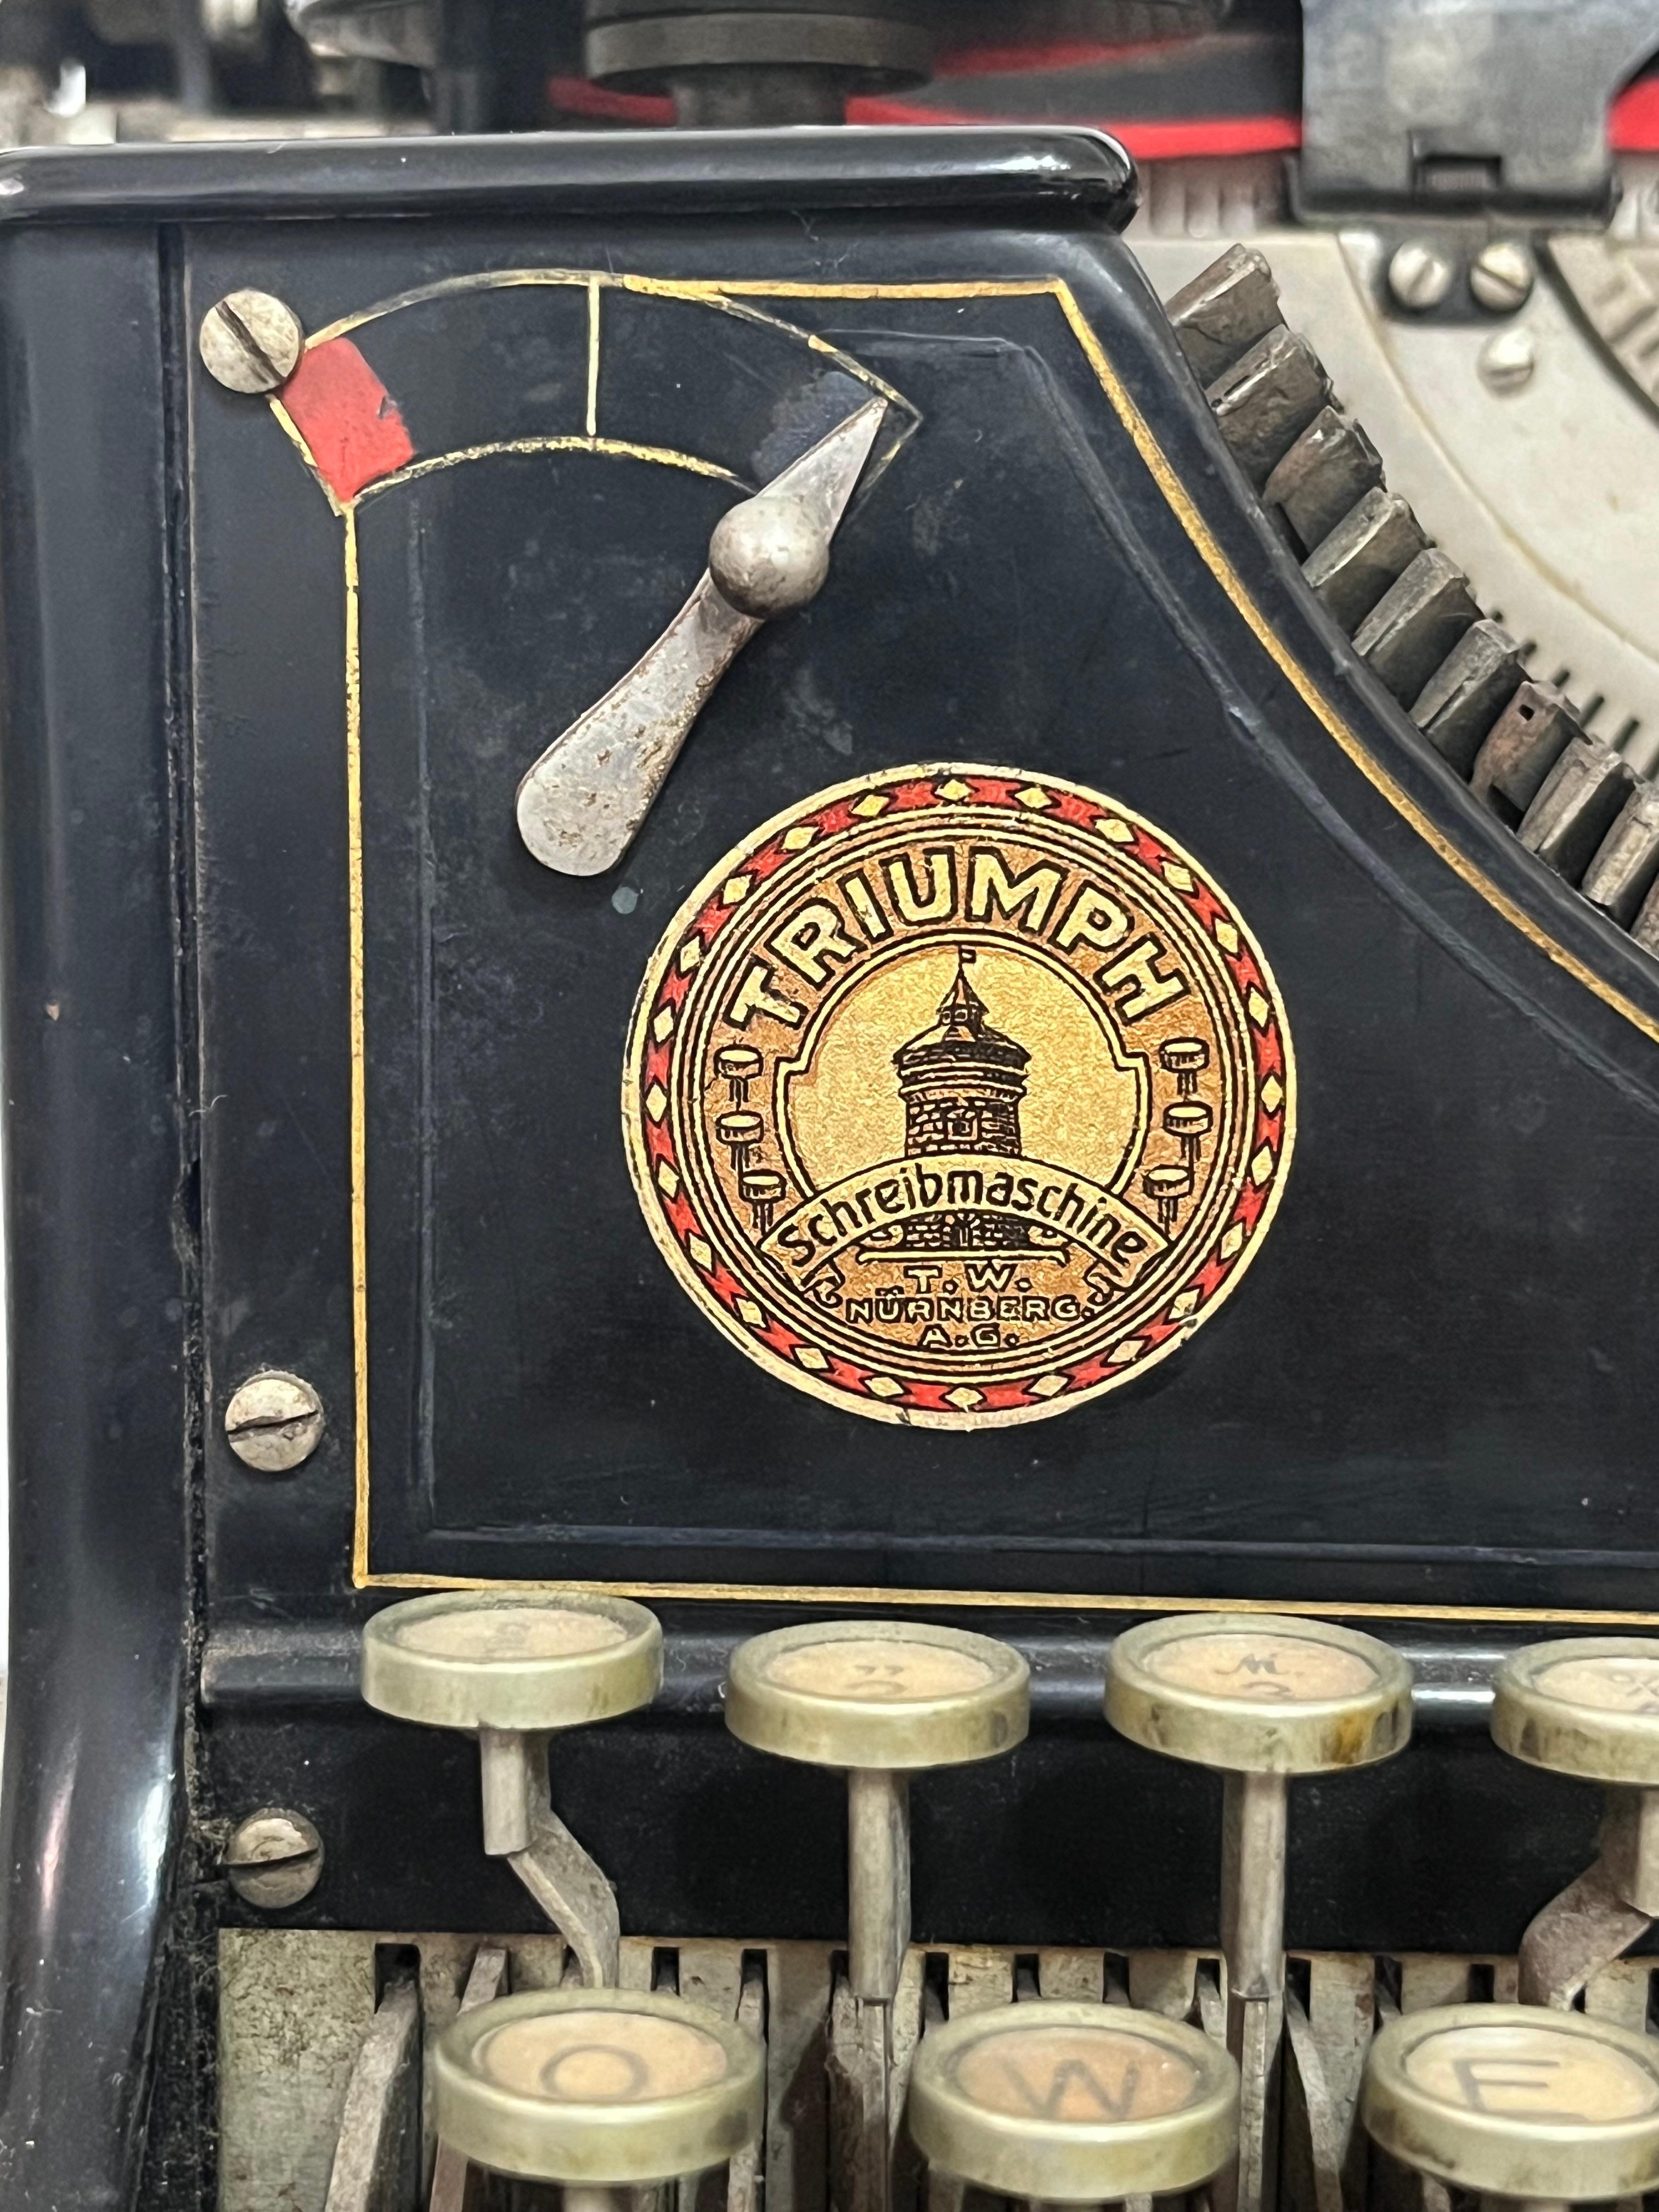 Machine à écrire Triumph, Allemagne, 1930
Trouvé dans une étude de notaire, signes de vieillissement.